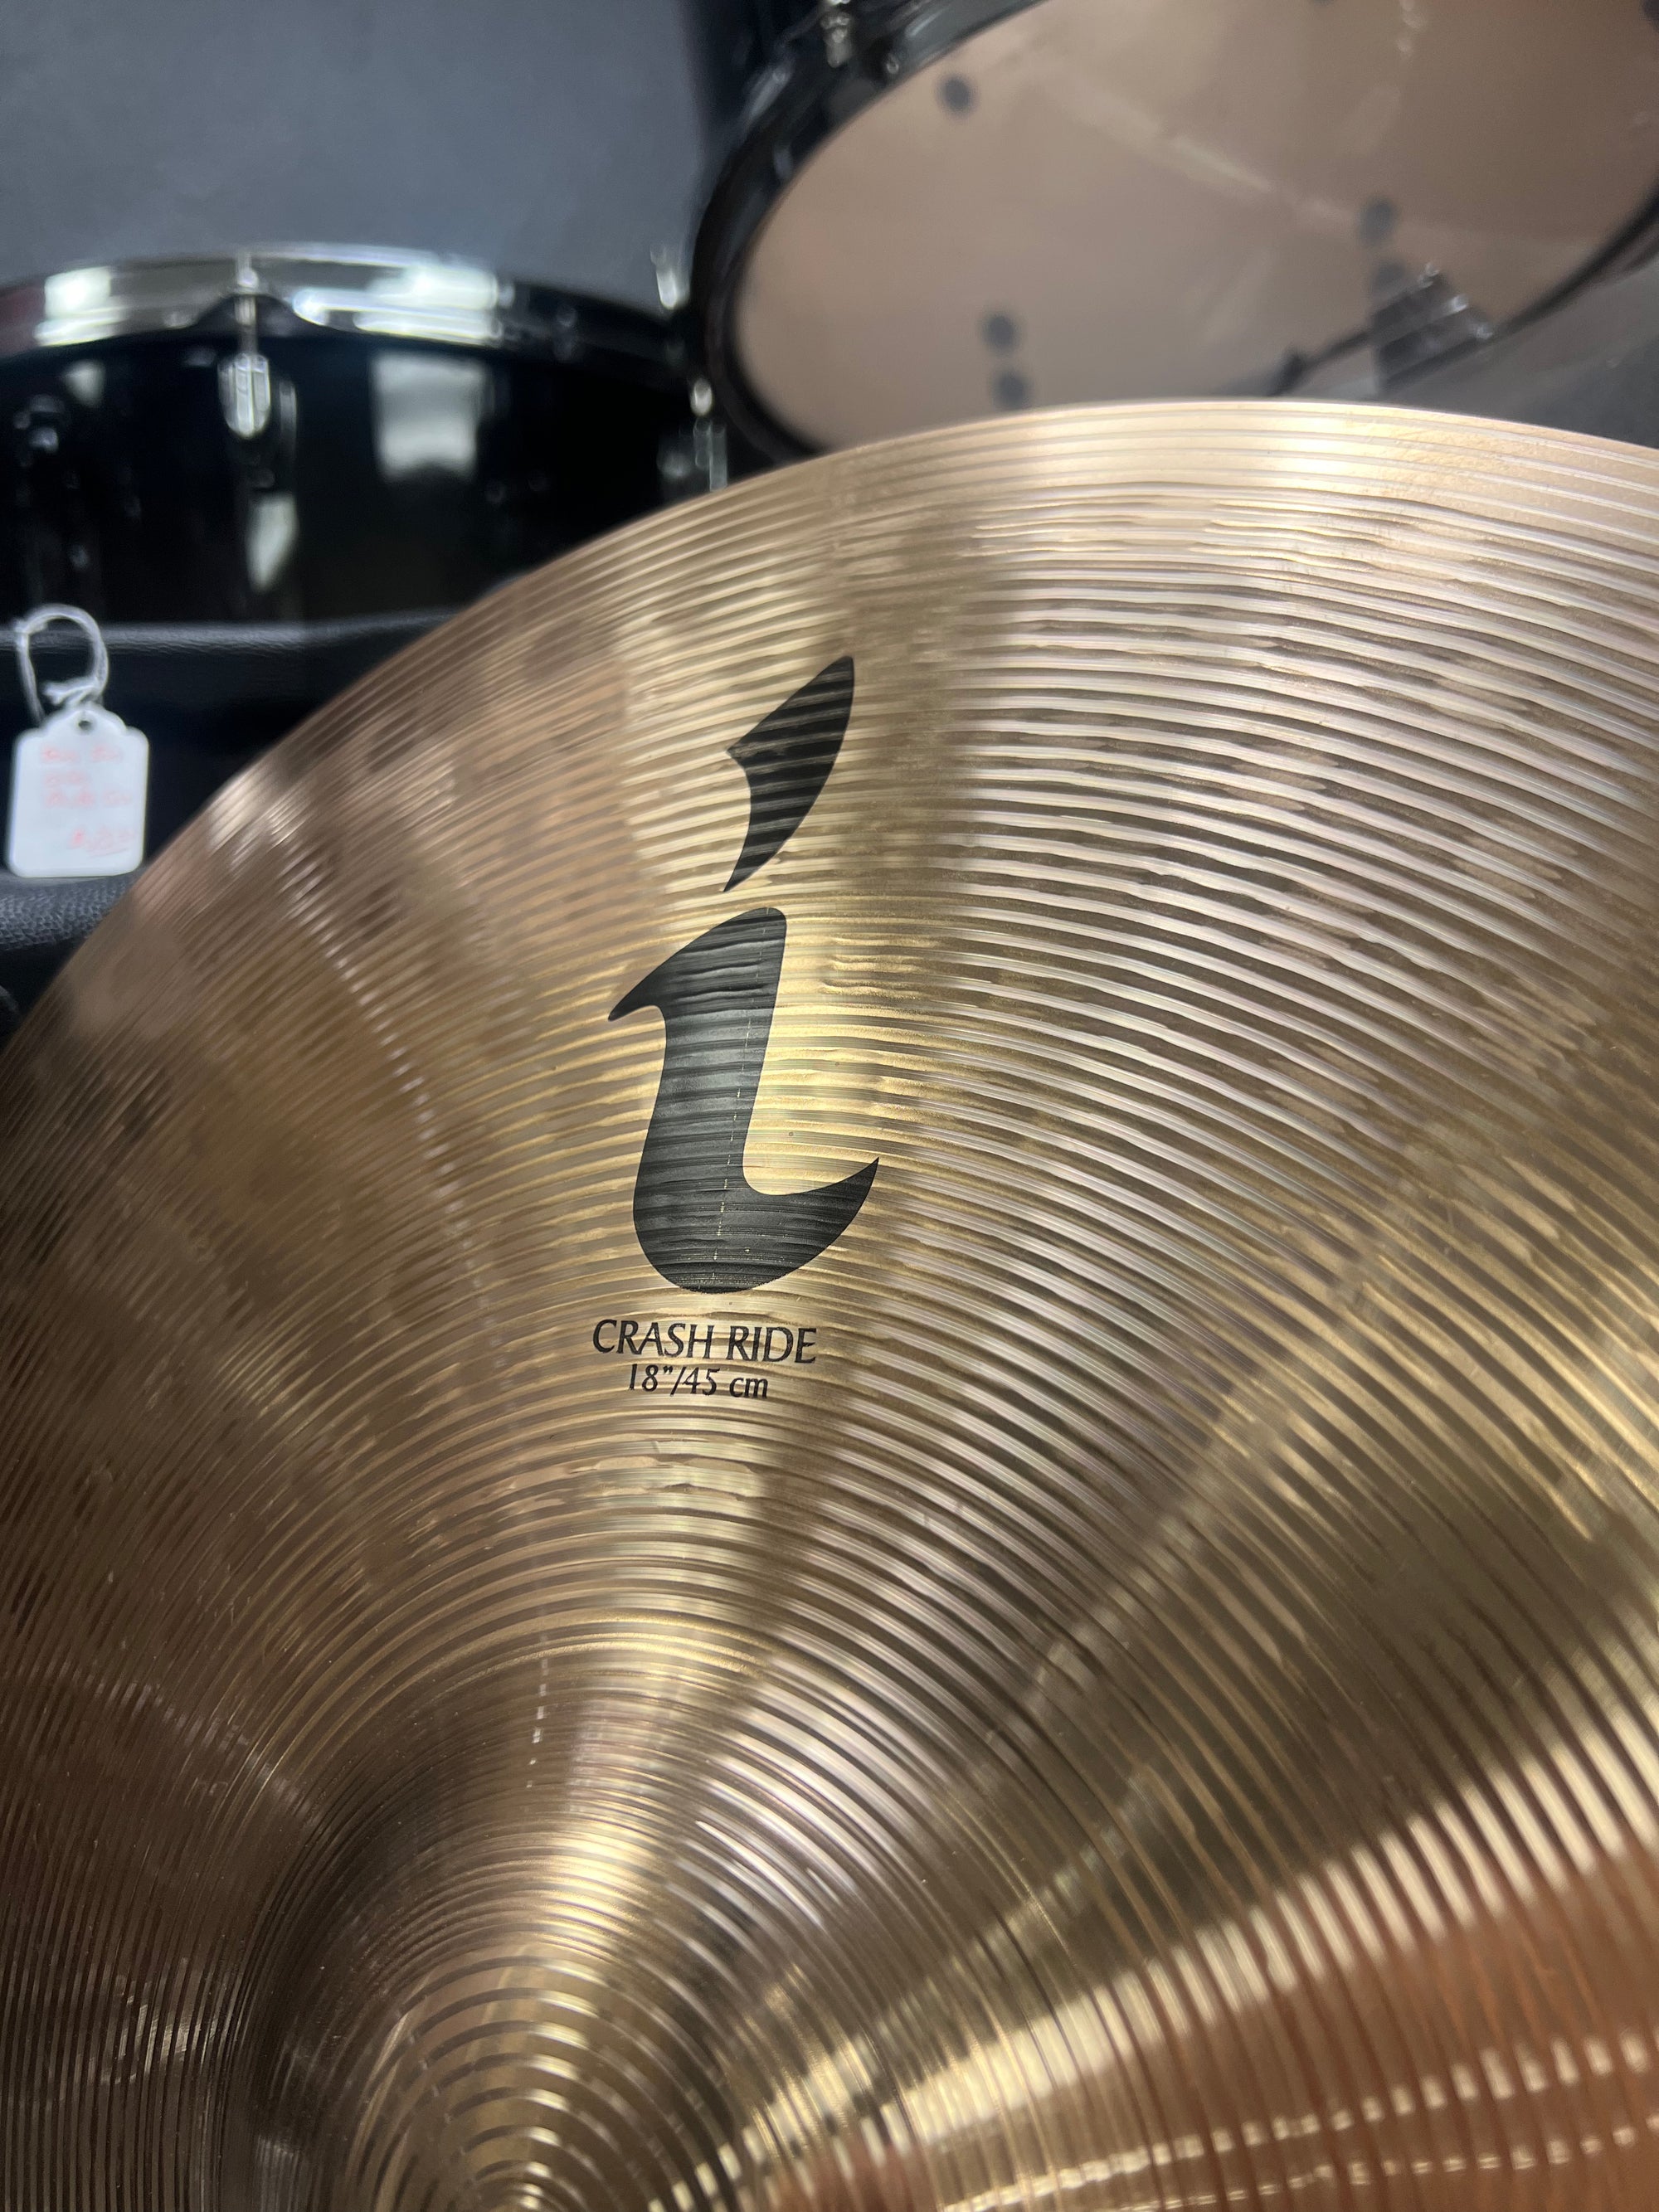 Zildjian 18” I series crash/ride cymbal